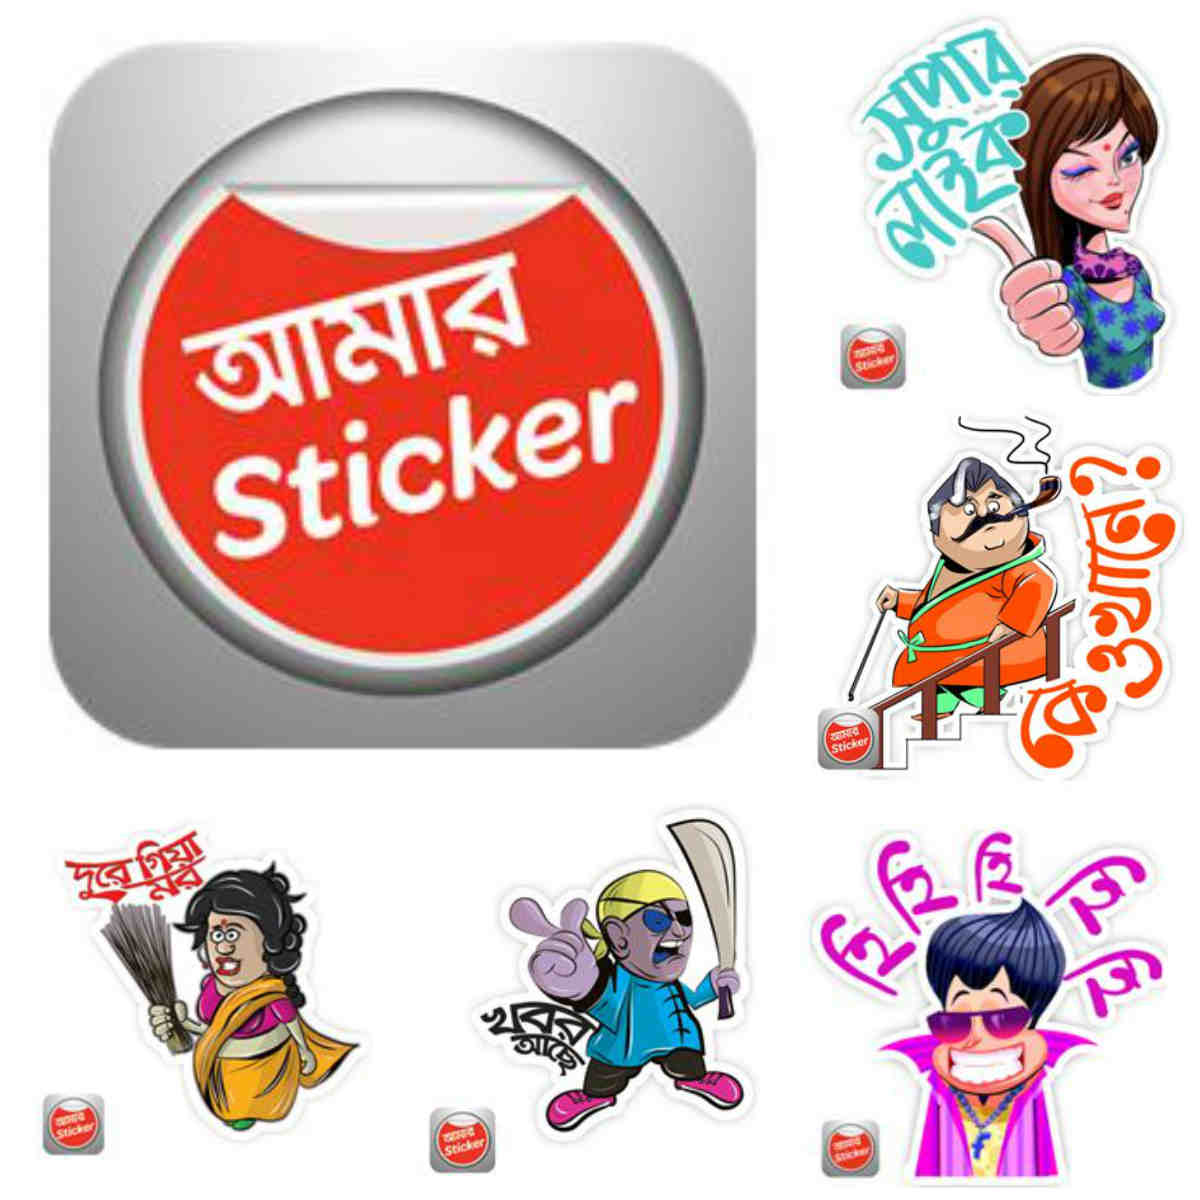 Facebook Bengali Comment Wallpaper - Amar Sticker - 1200x1200 Wallpaper -  